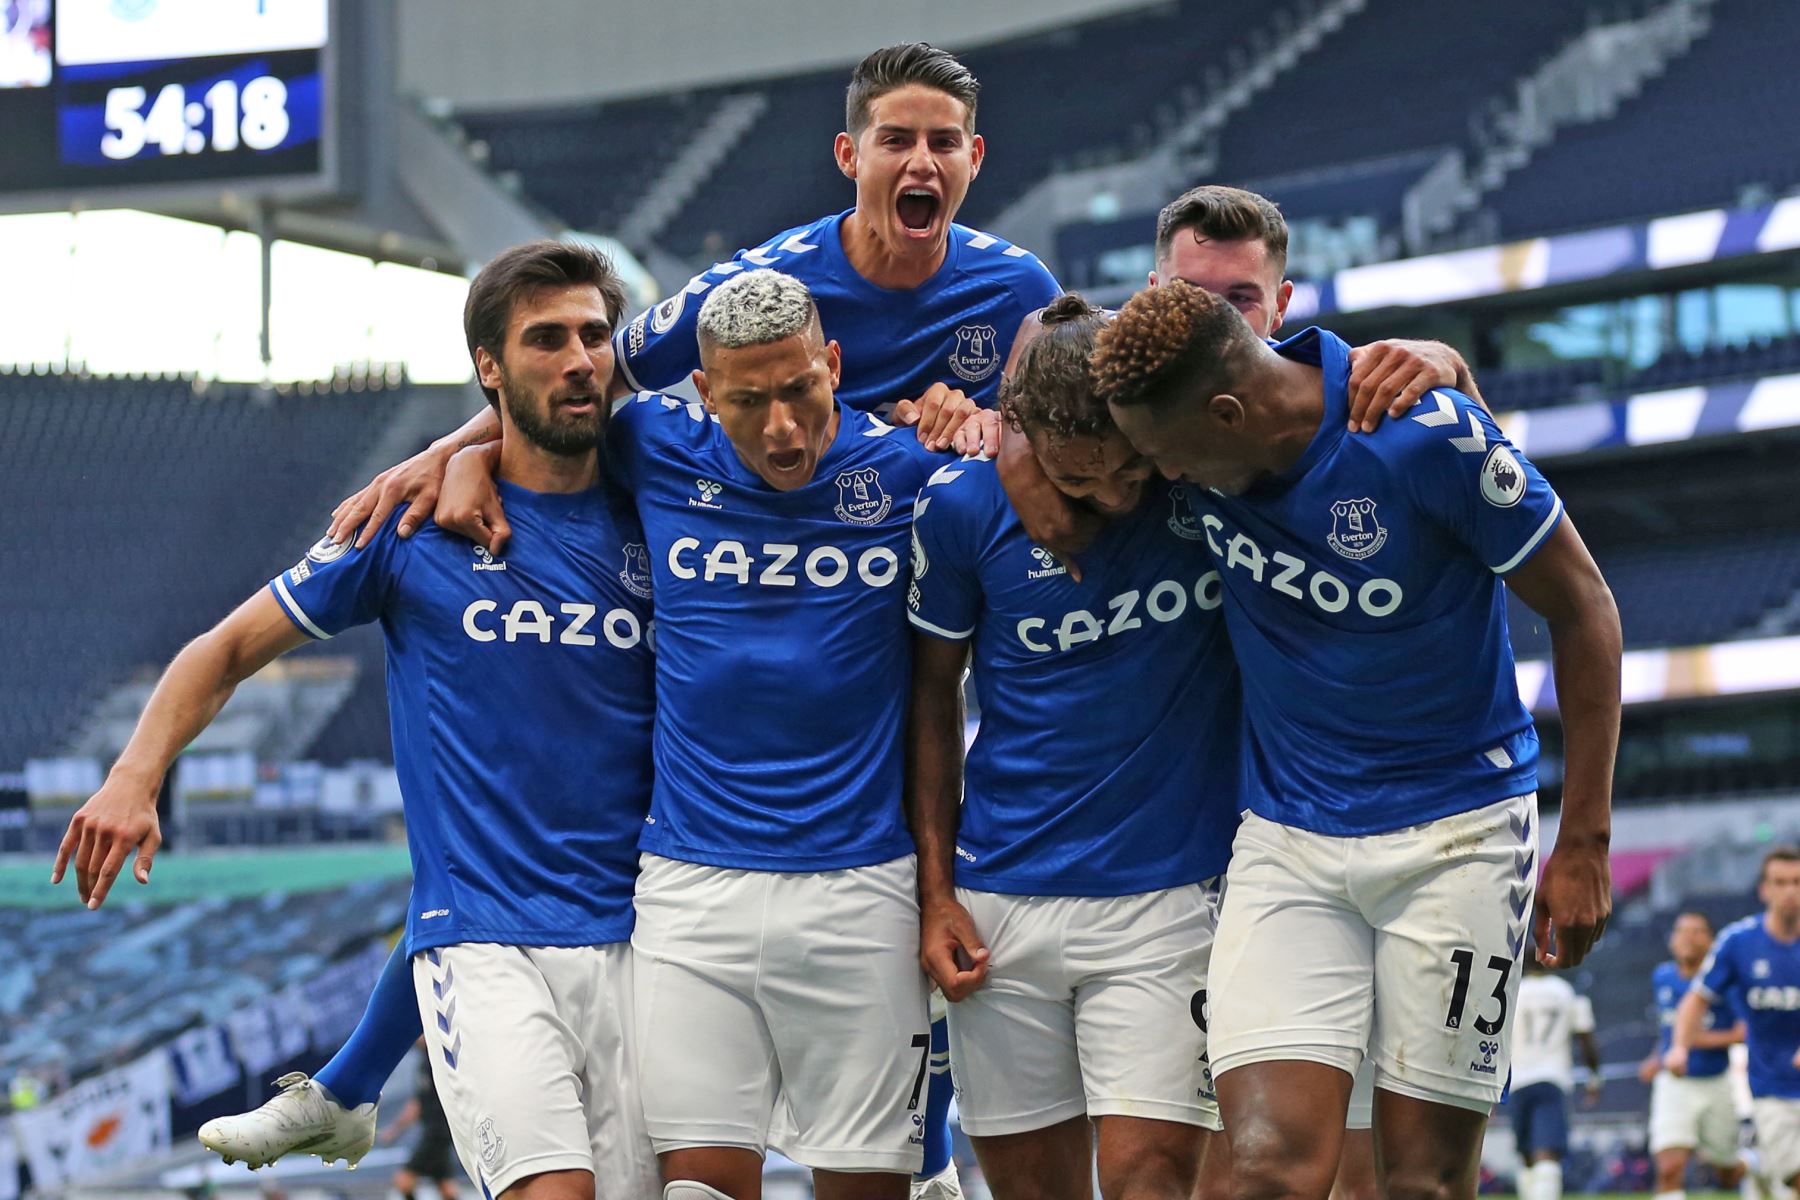 El delantero inglés del Everton, Dominic Calvert-Lewin, celebra con sus compañeros de equipo después de anotar el primer gol del Everton durante el partido de fútbol de la Premier League. Foto: AFP